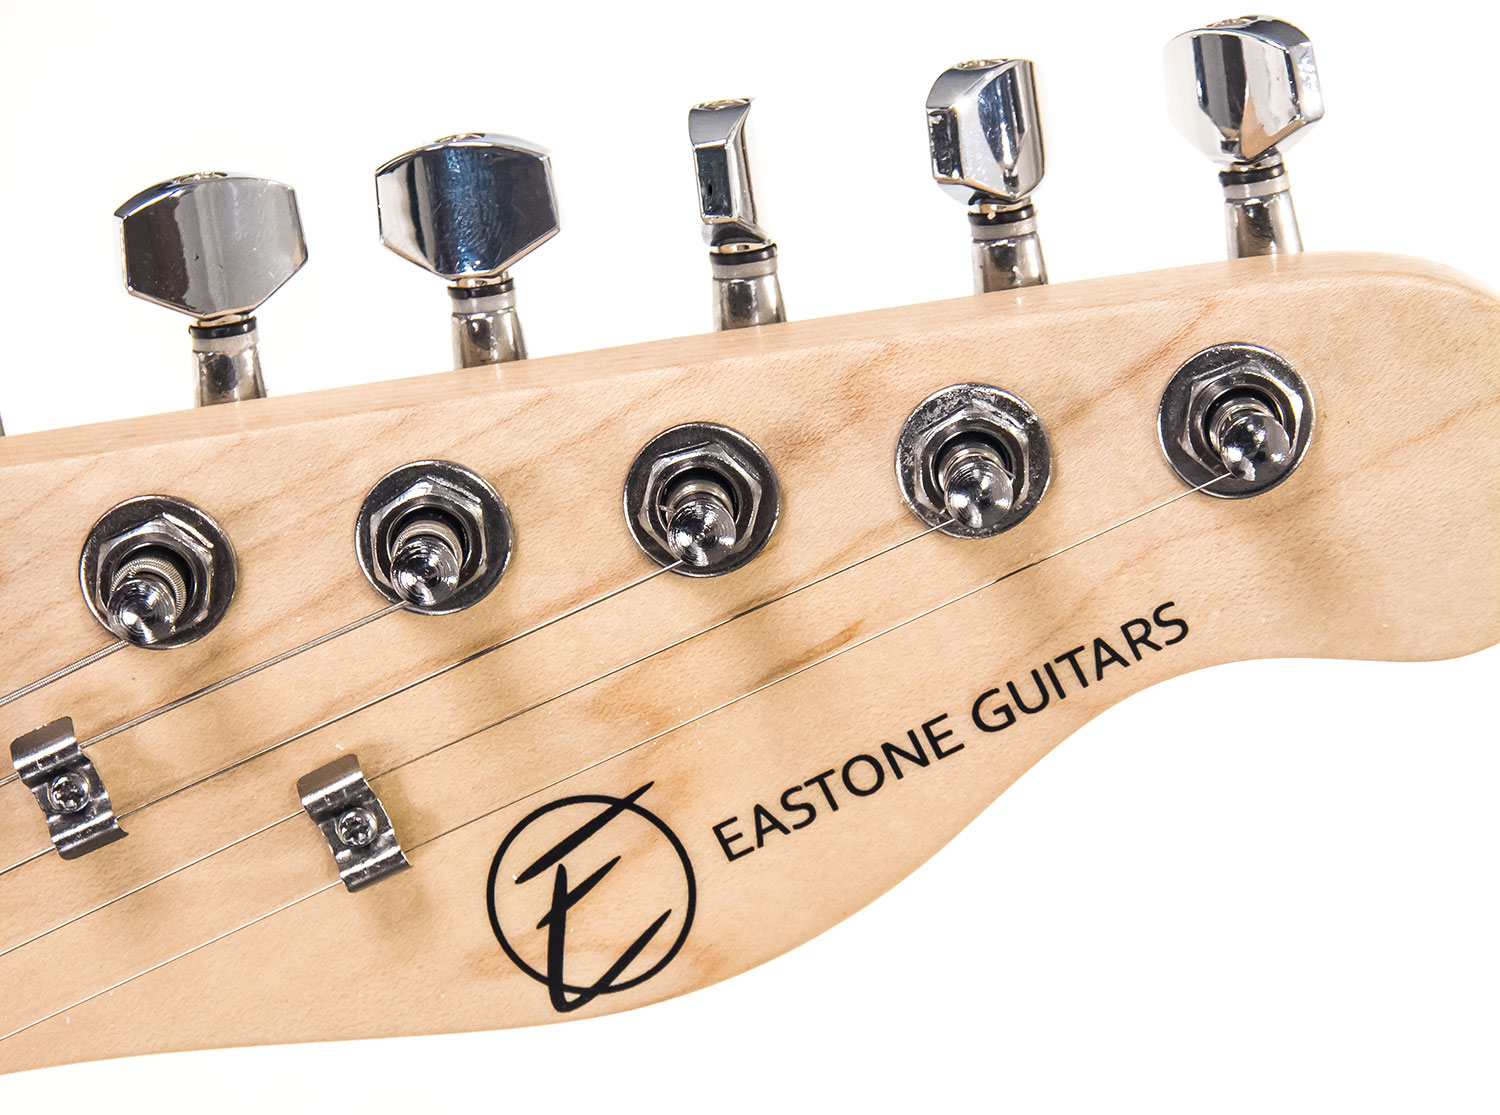 Eastone Tl70 Ss Ht Pur - Black - Televorm elektrische gitaar - Variation 4